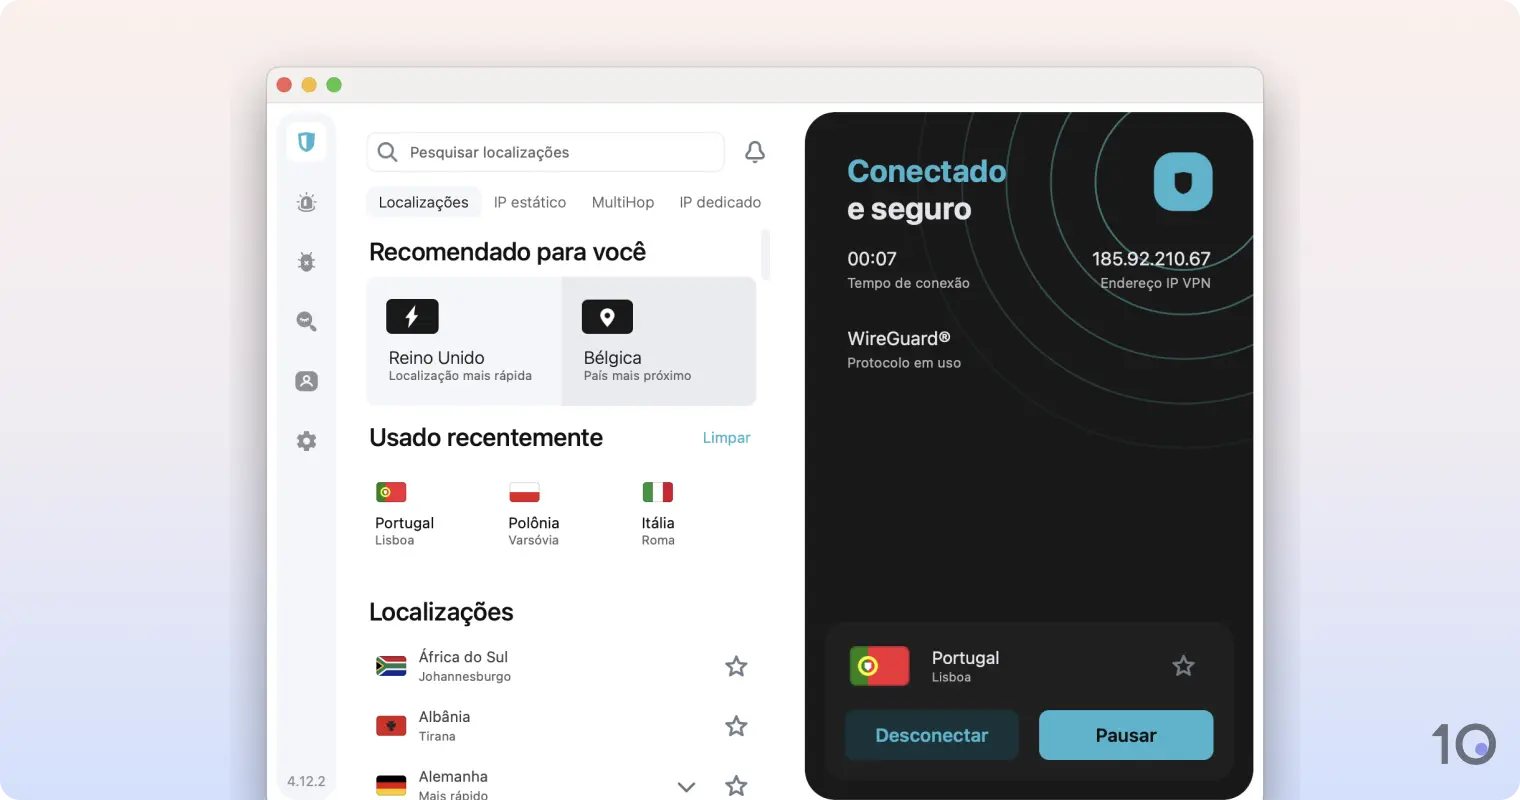 Surfshark VPN's app for macOS